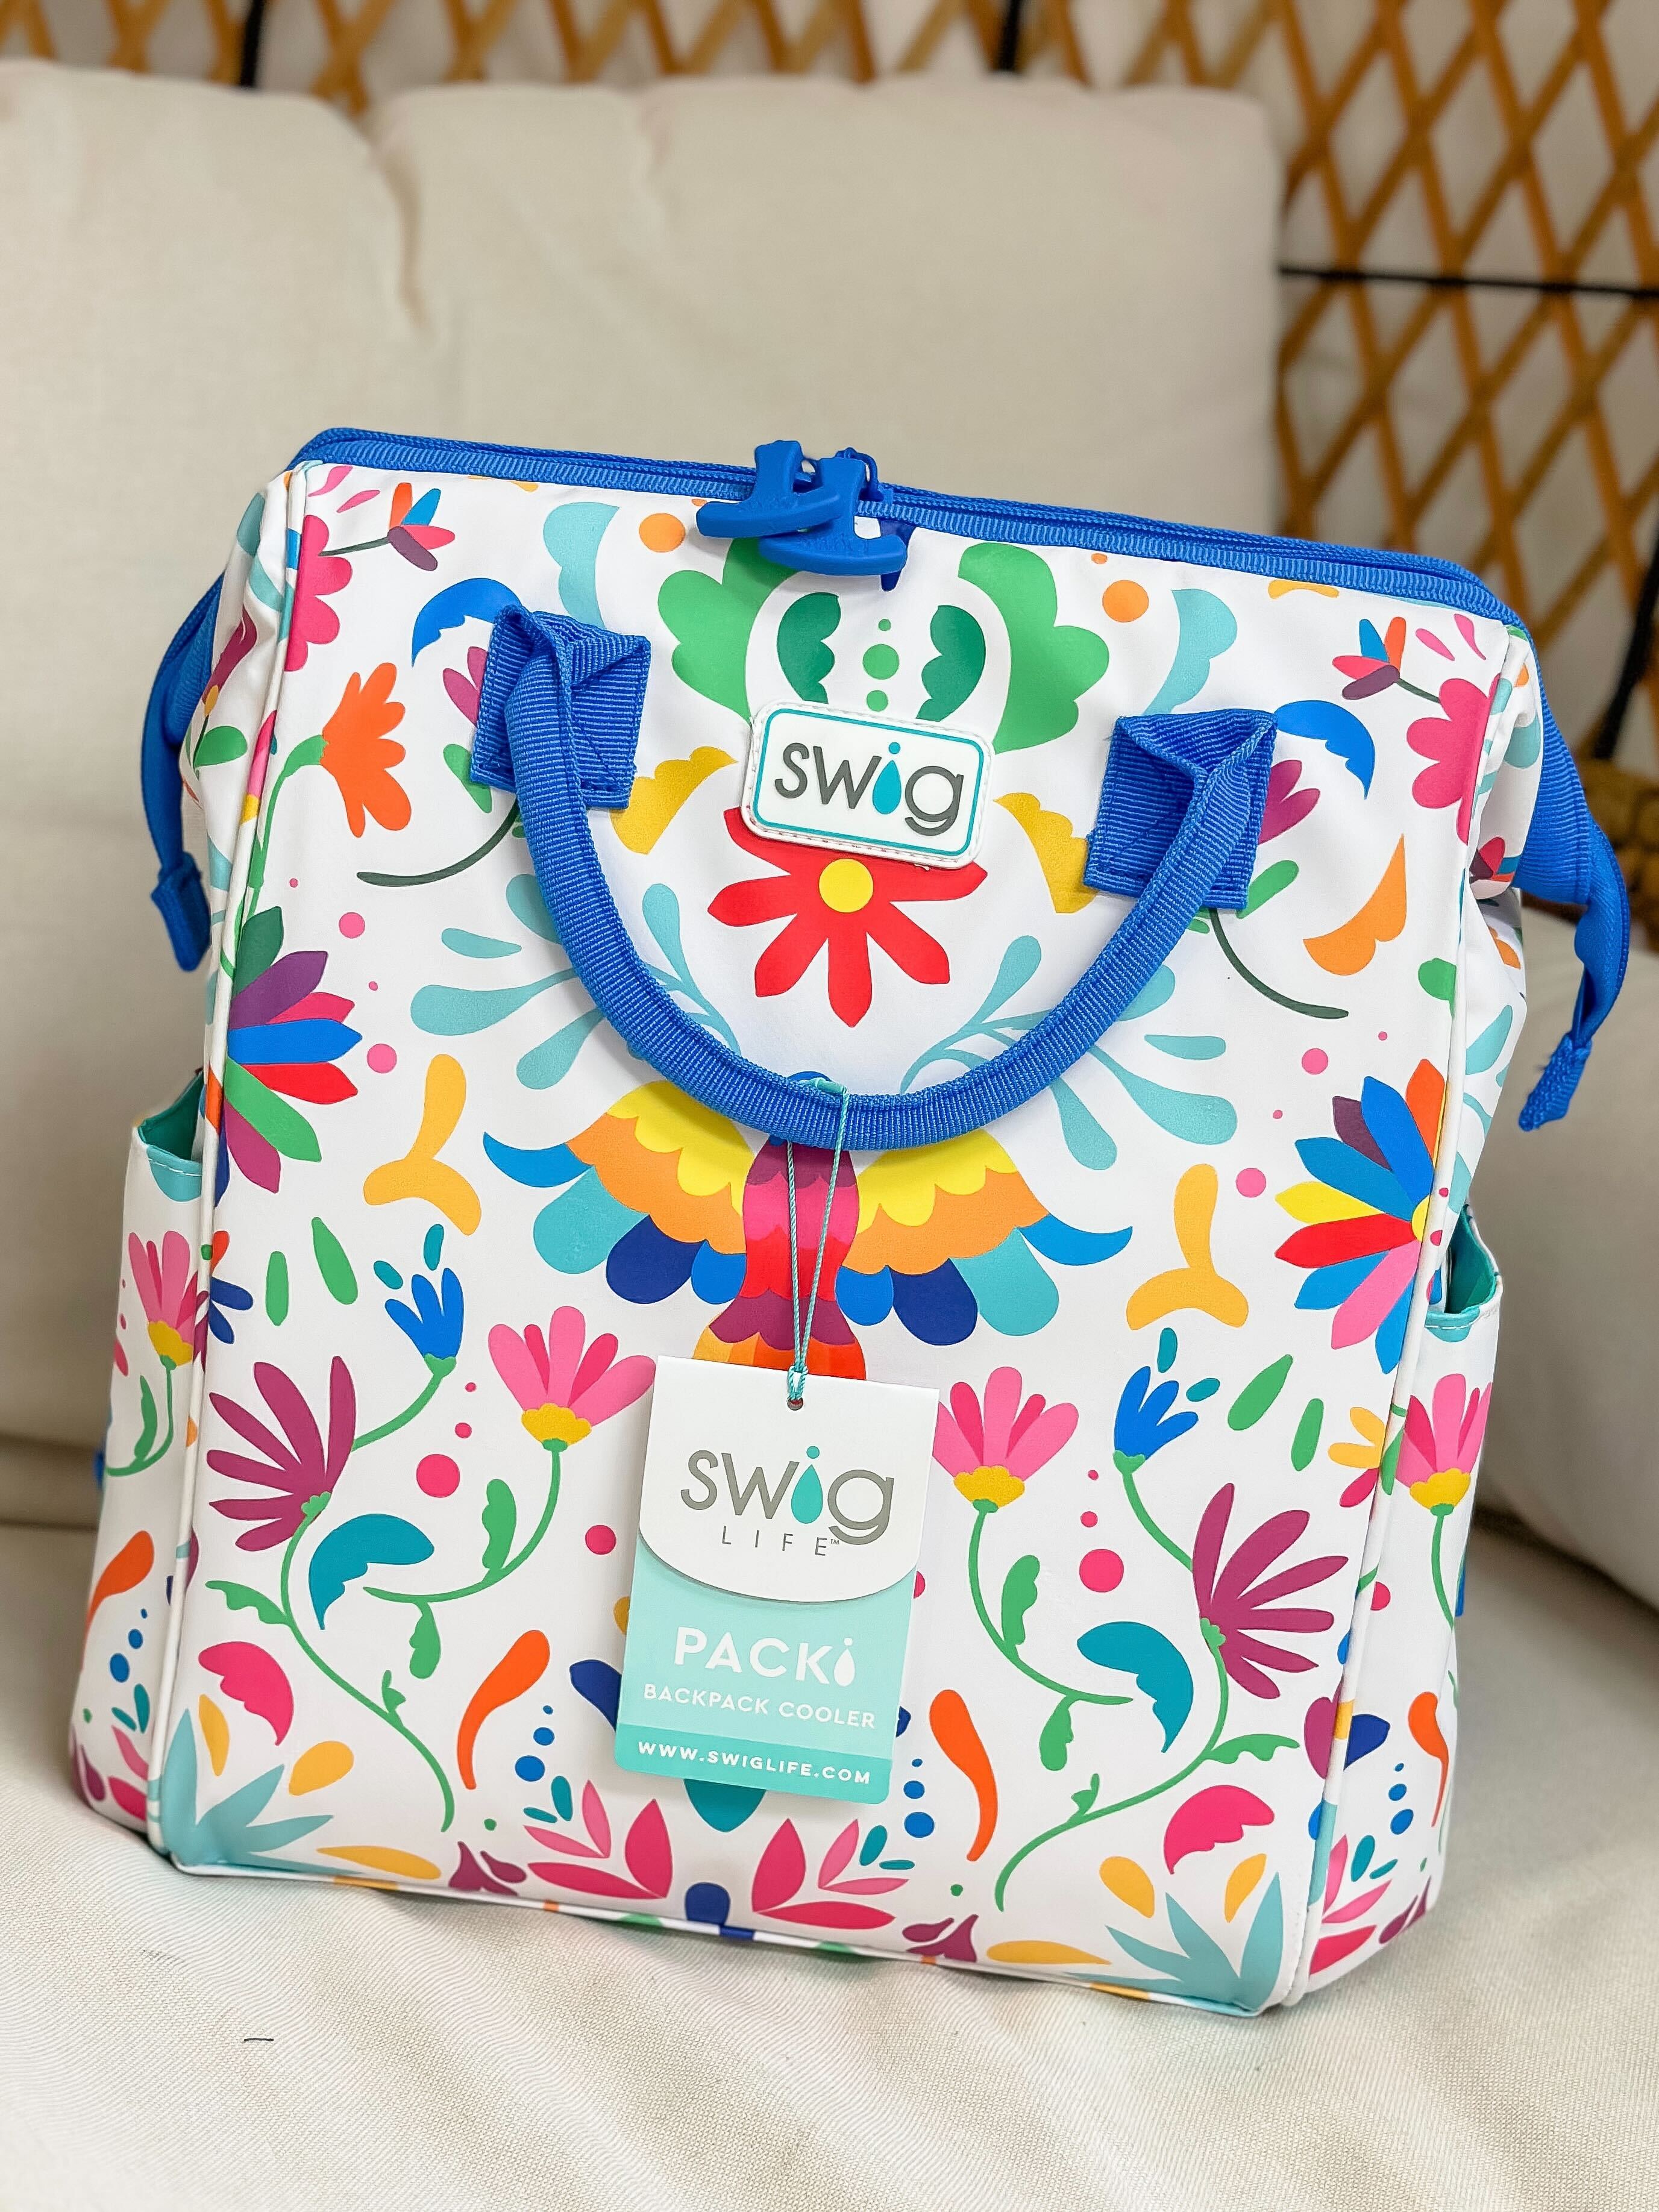 Viva Fiesta Packi Backpack Cooler by Swig